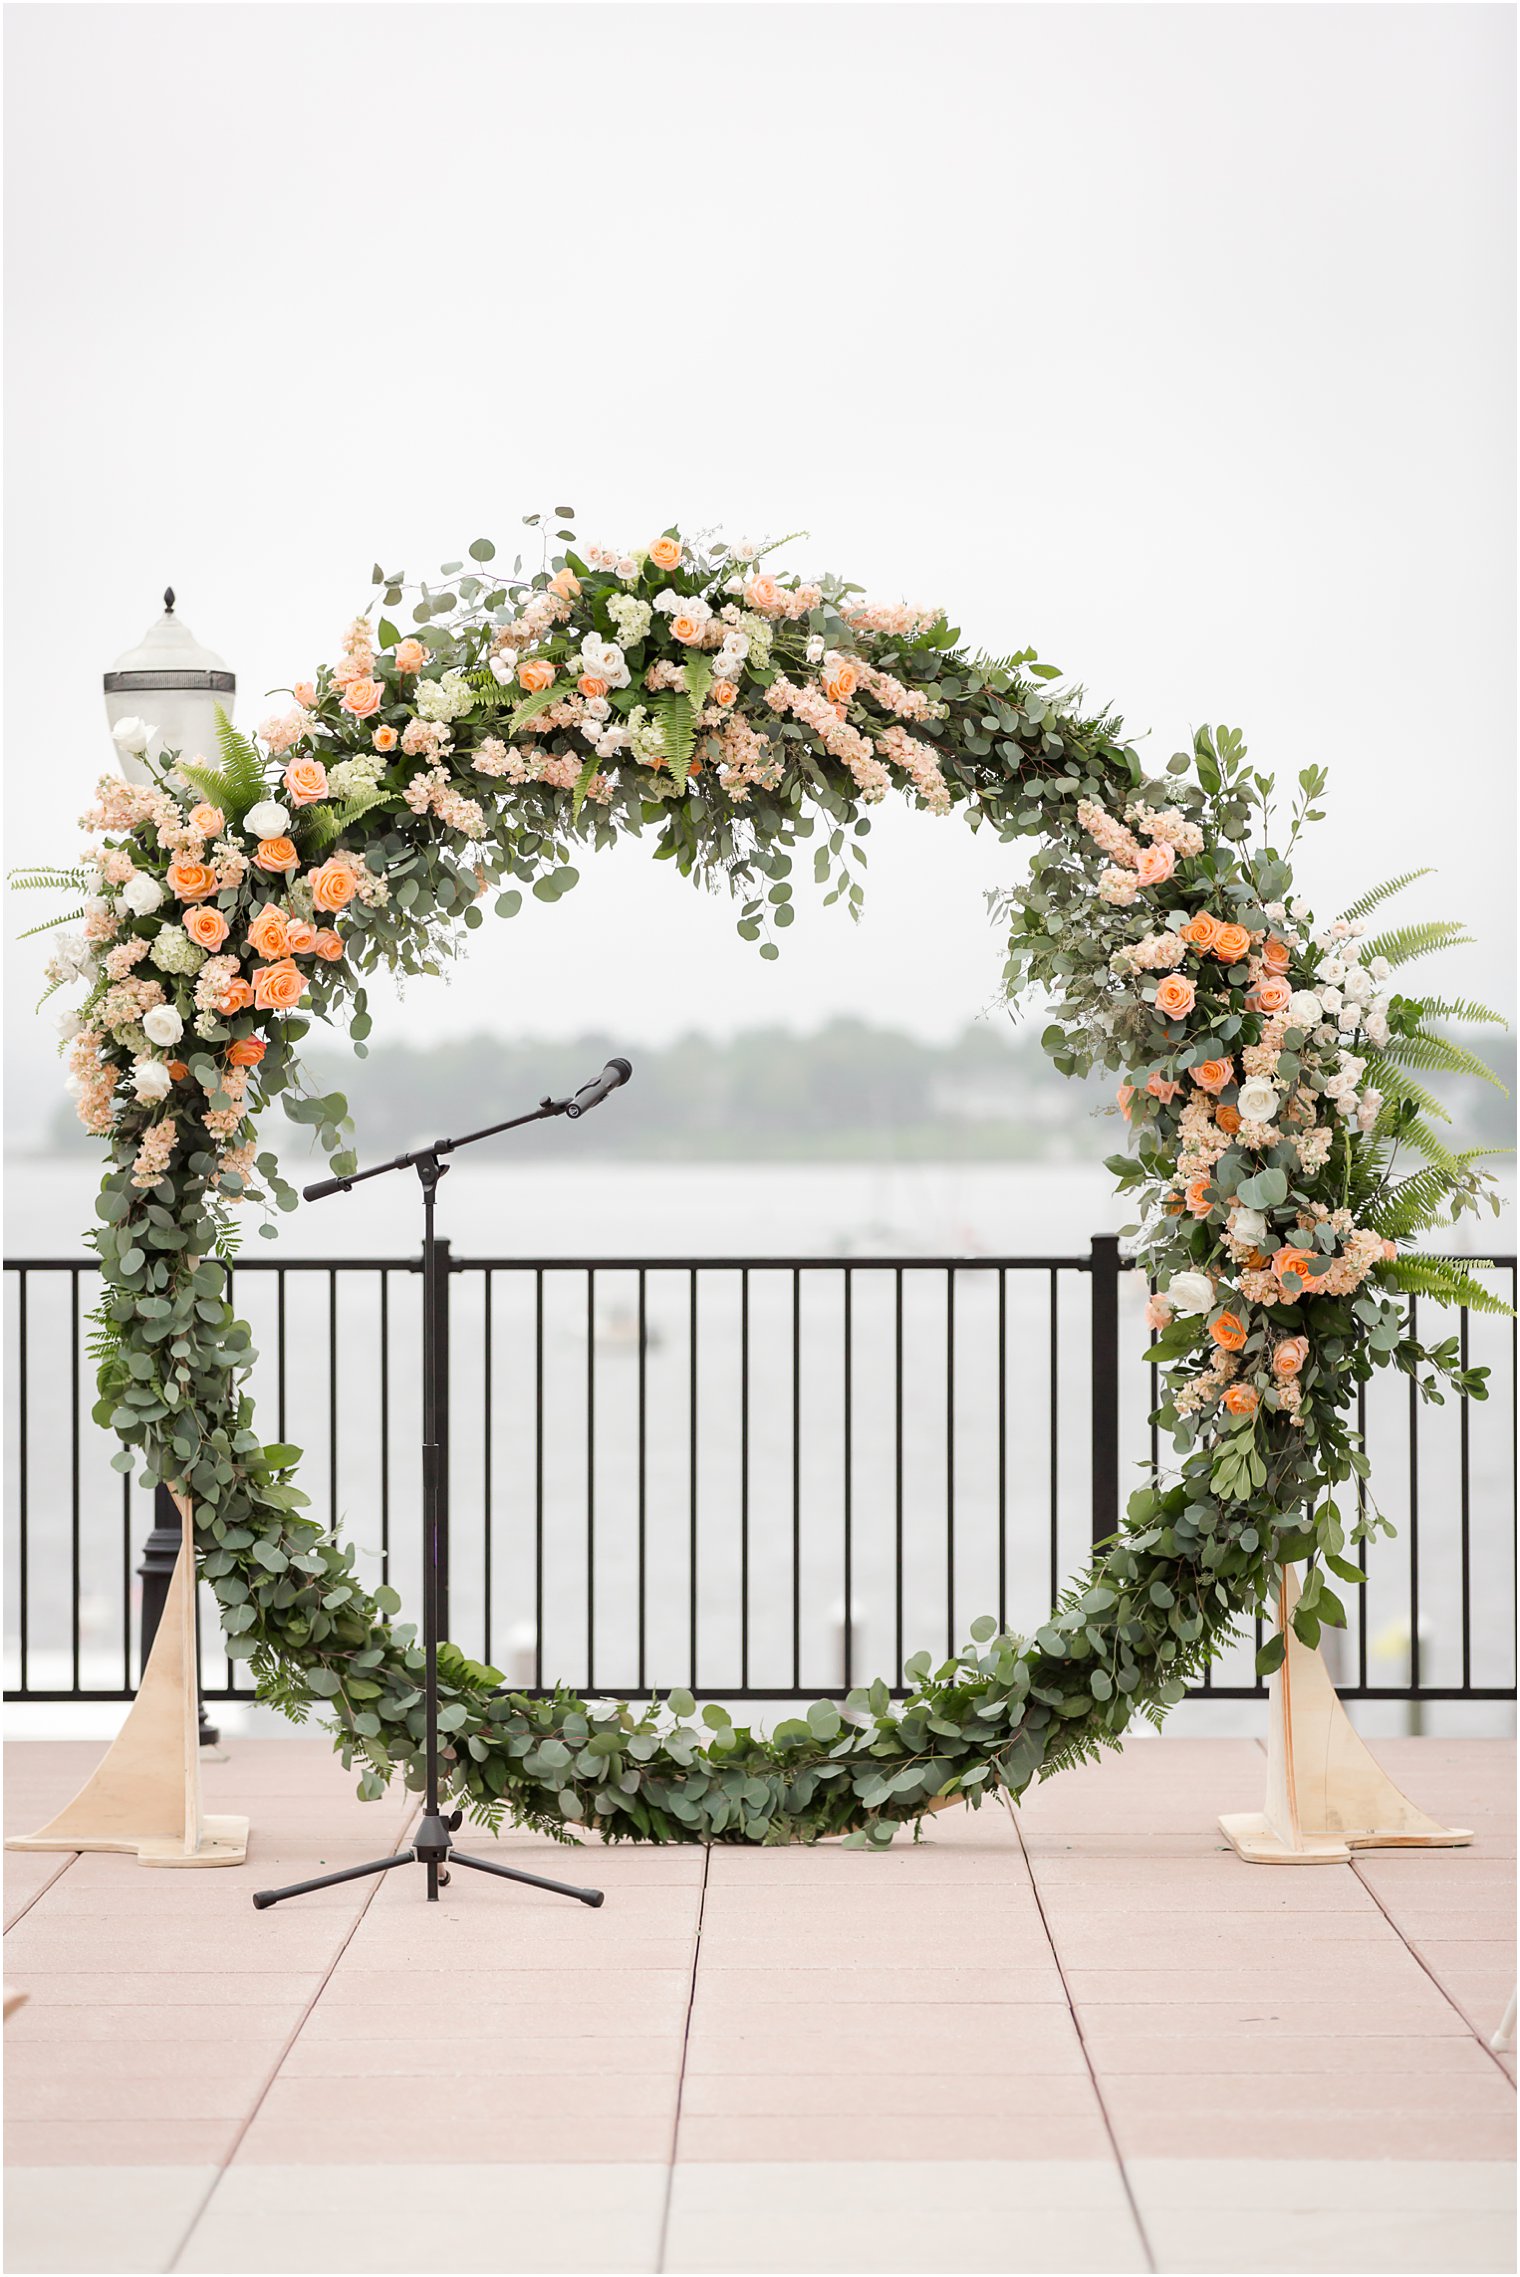 Molly Pitcher Inn wedding ceremony wreath by Craig Kiely and Darryn Murphy Designs